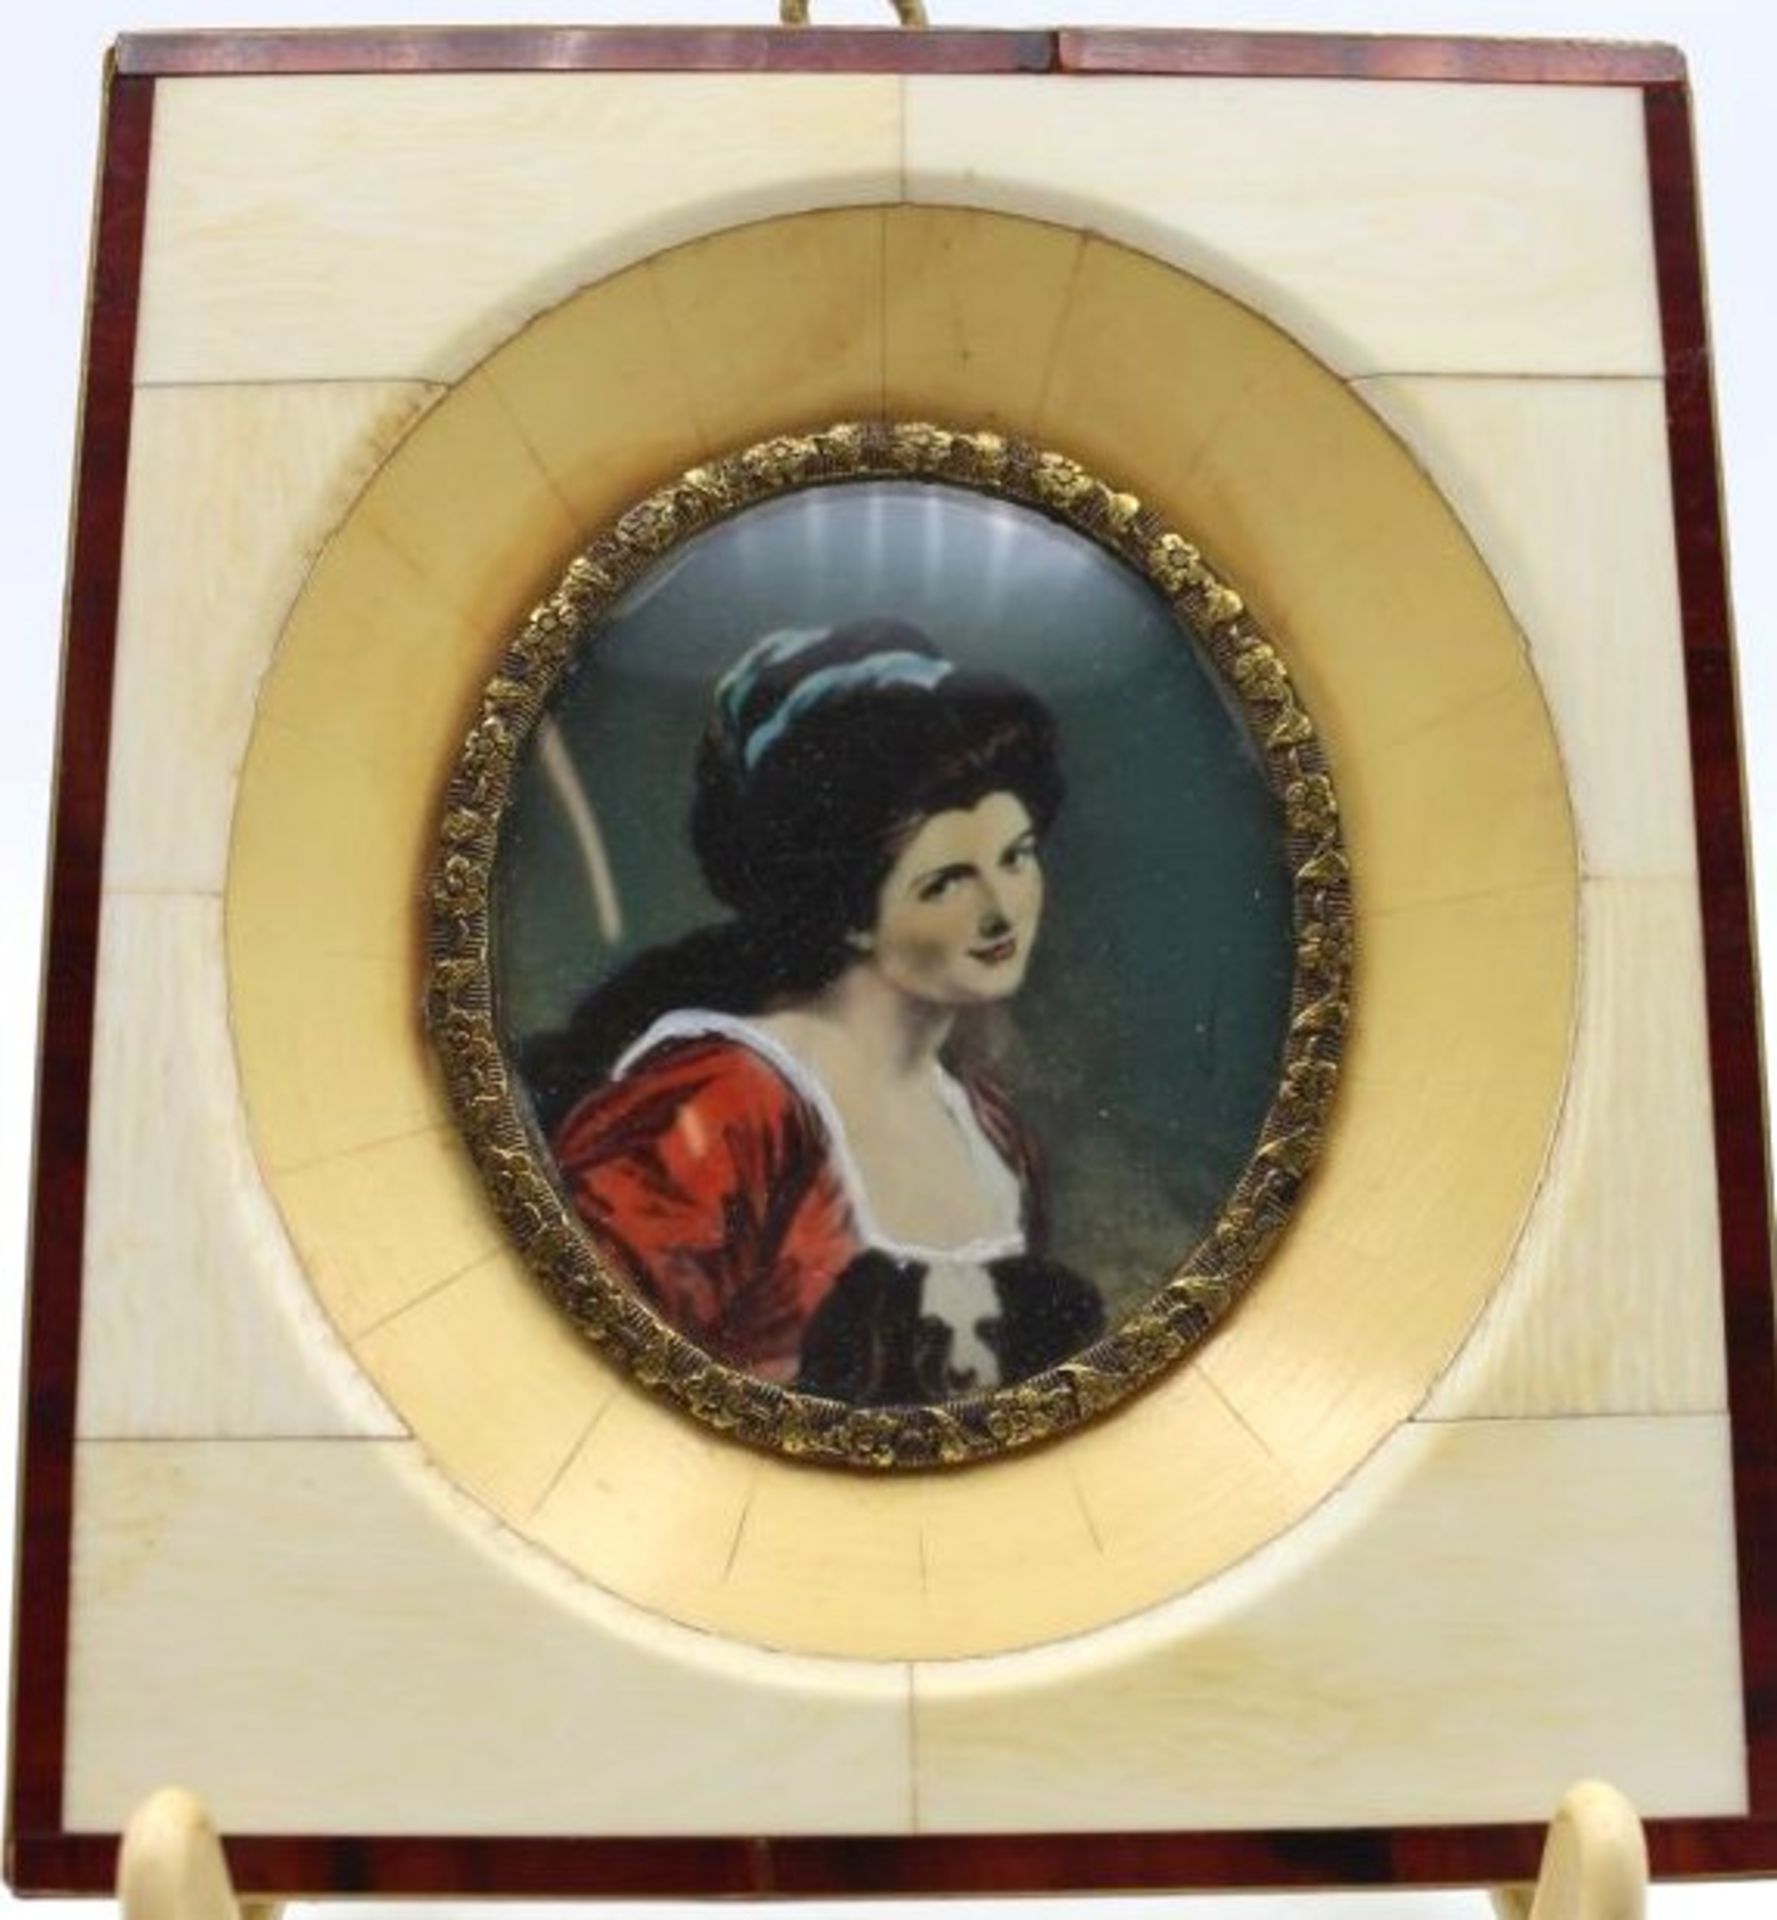 Miniatur-Malerei auf Elfenbein, Lady Hamilton, gerahmt, RG 11,5 x 10,5cm.- - -22.61 % buyer's